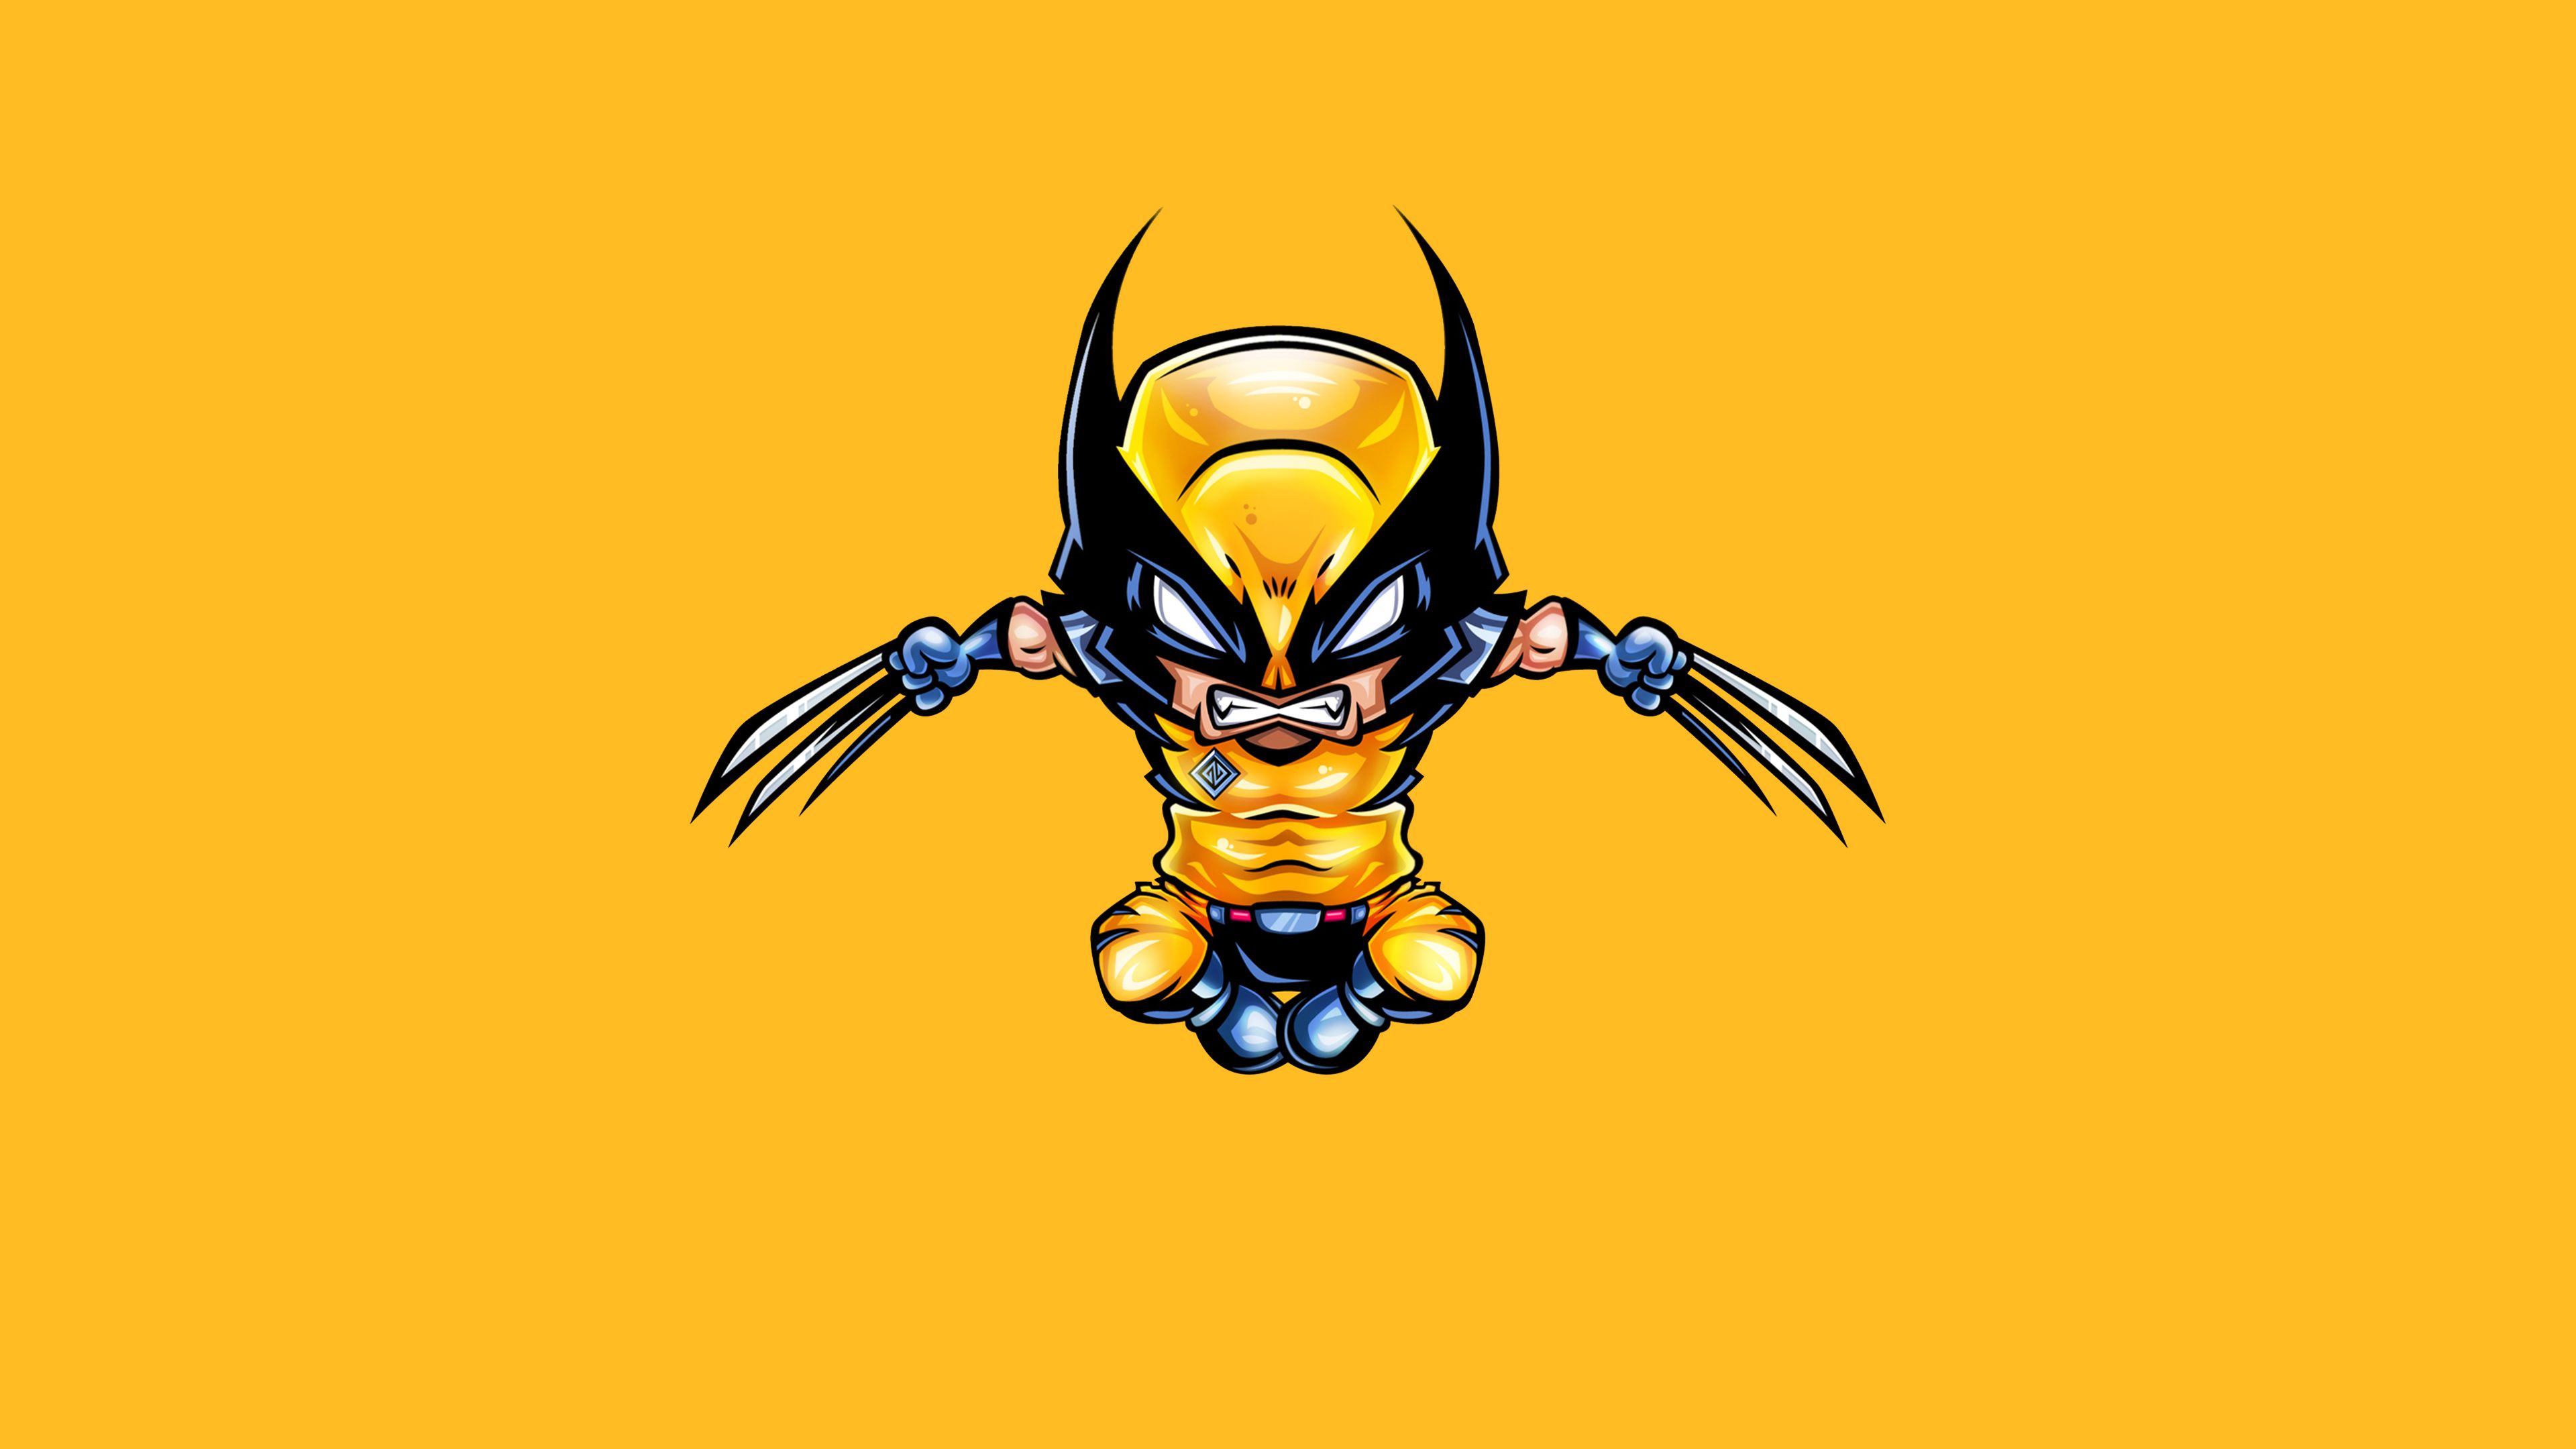 Wolverine Minimal 4k, HD Superheroes, 4k Wallpaper, Image